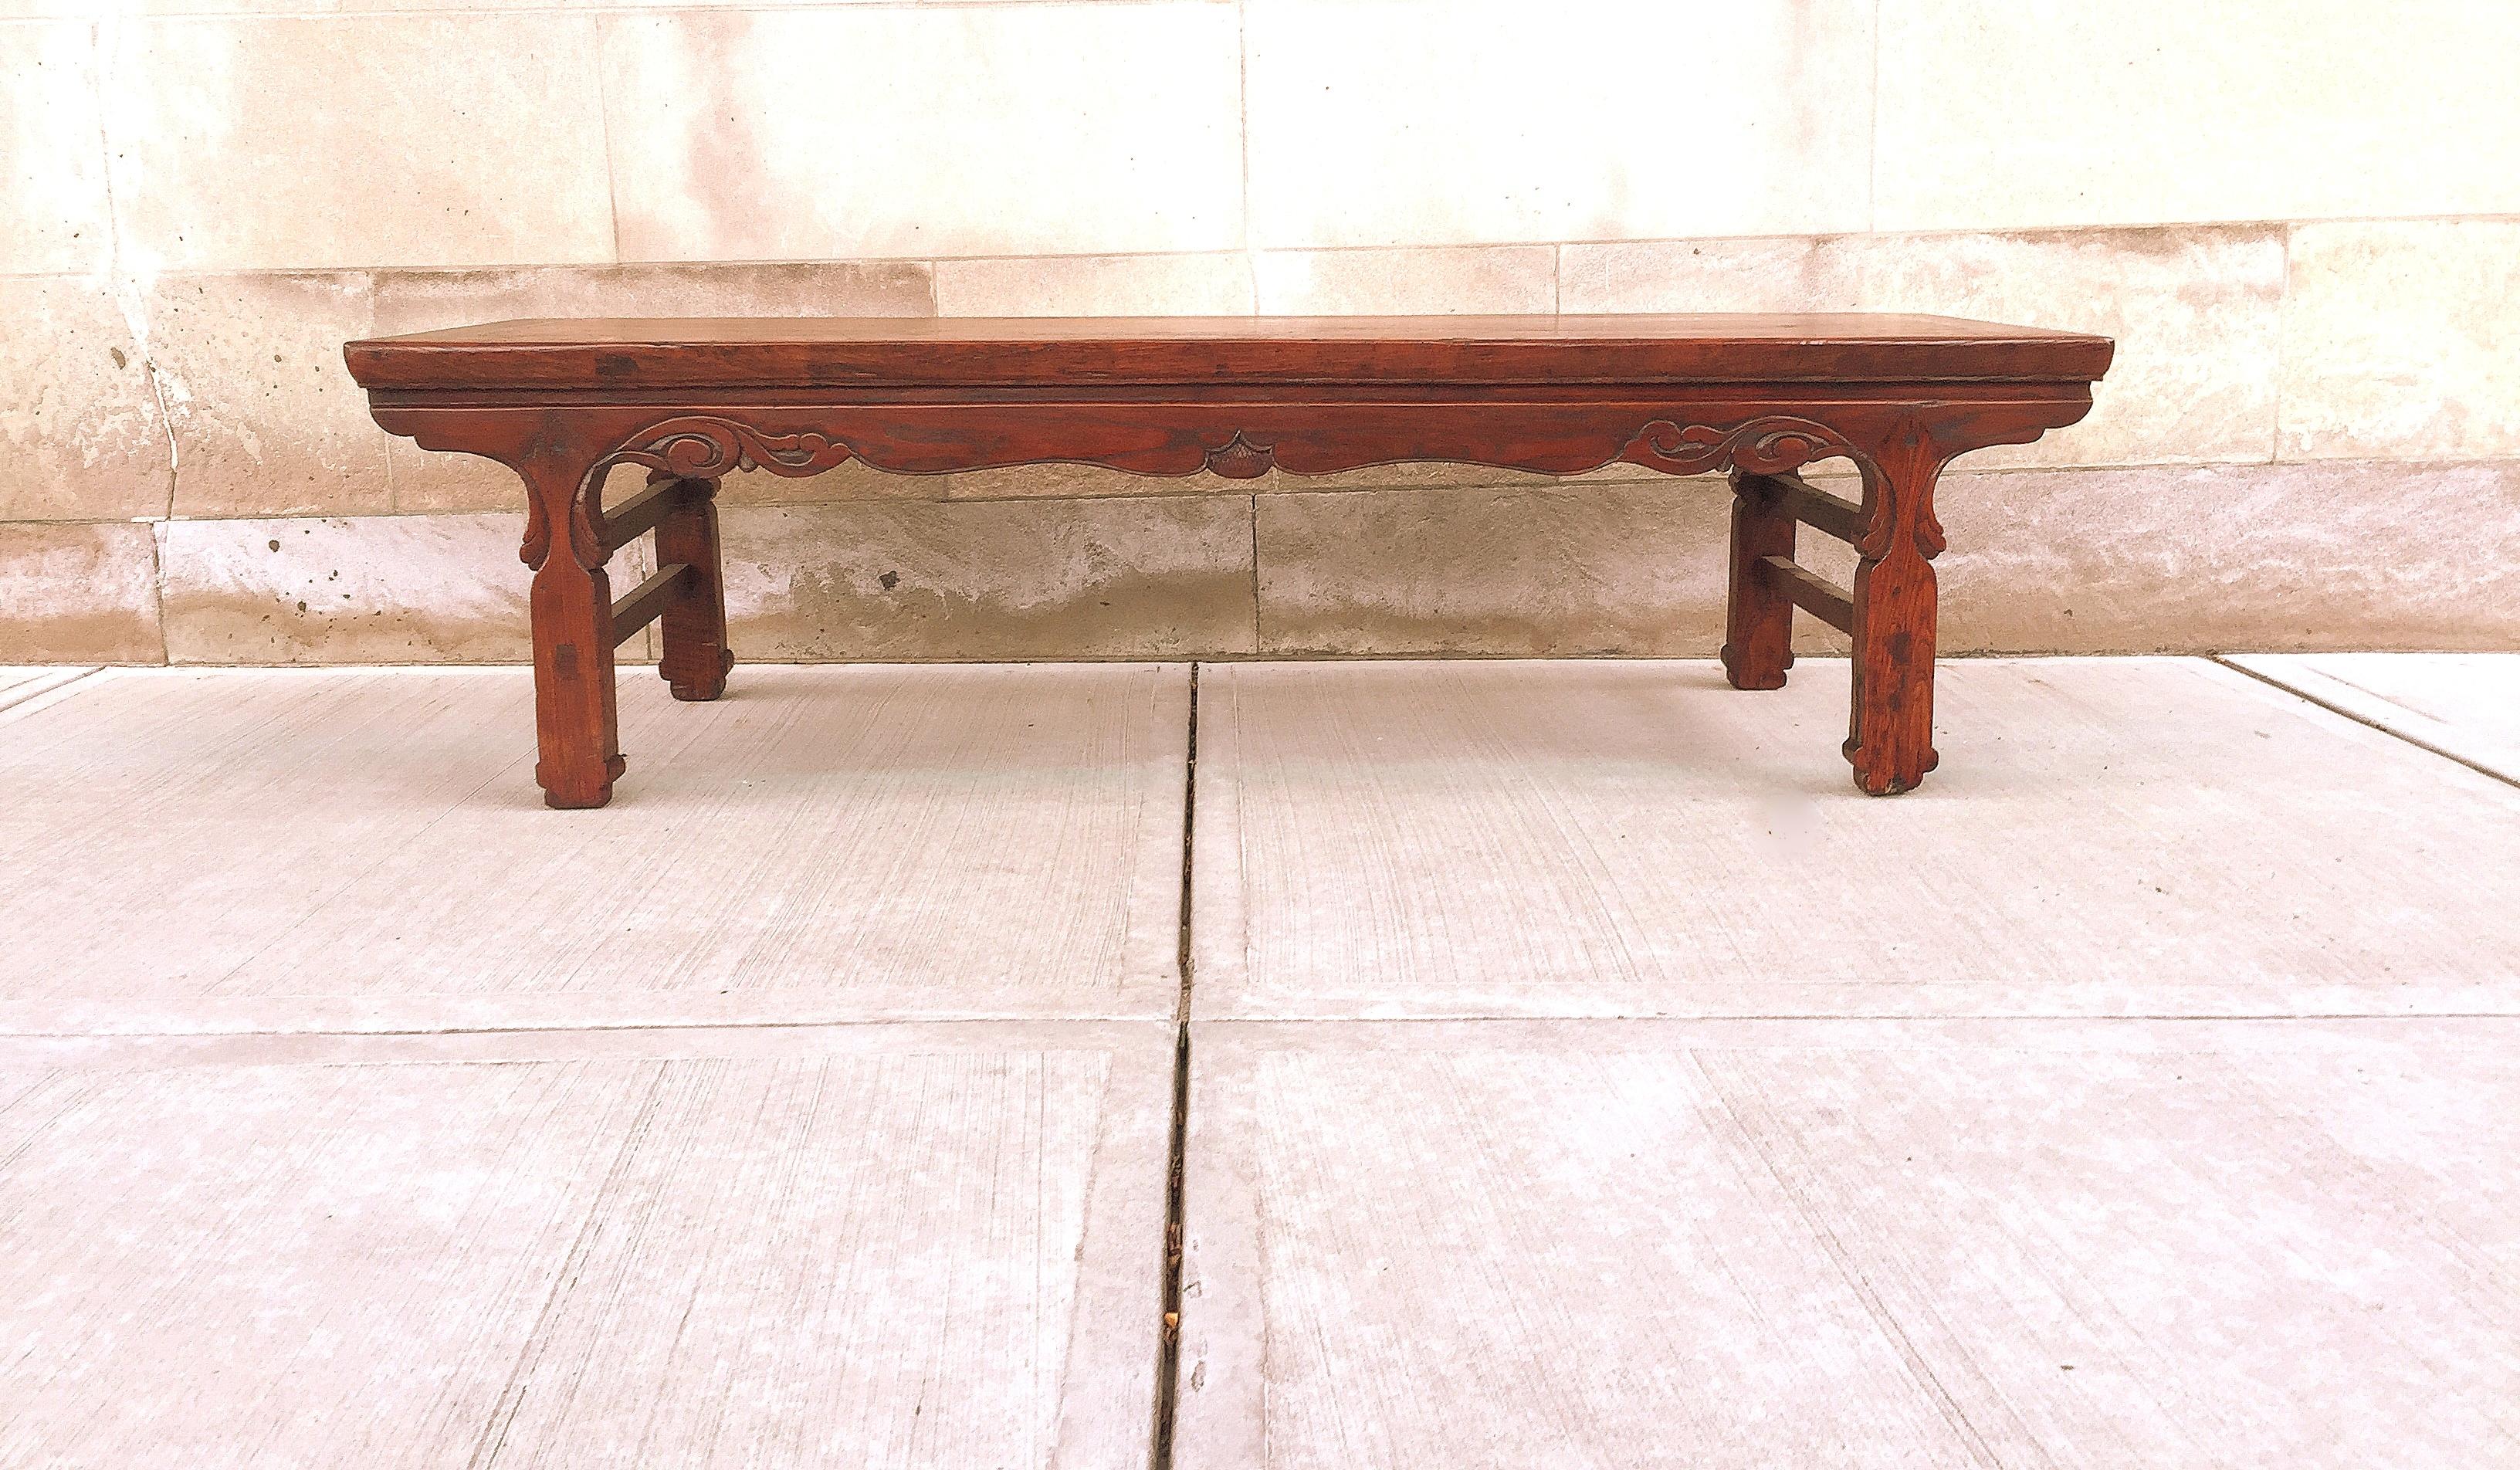 Jumu Holz Antiquitäten asiatischen Kang niedrigen Tisch, kann verwendet werden, große Couchtisch oder Beistelltisch oder Sitzbank mit Reliefschnitzerei auf den Schürzen.
Der Tisch ist sehr stabil und kann als Sitzgelegenheit, Couchtisch und für